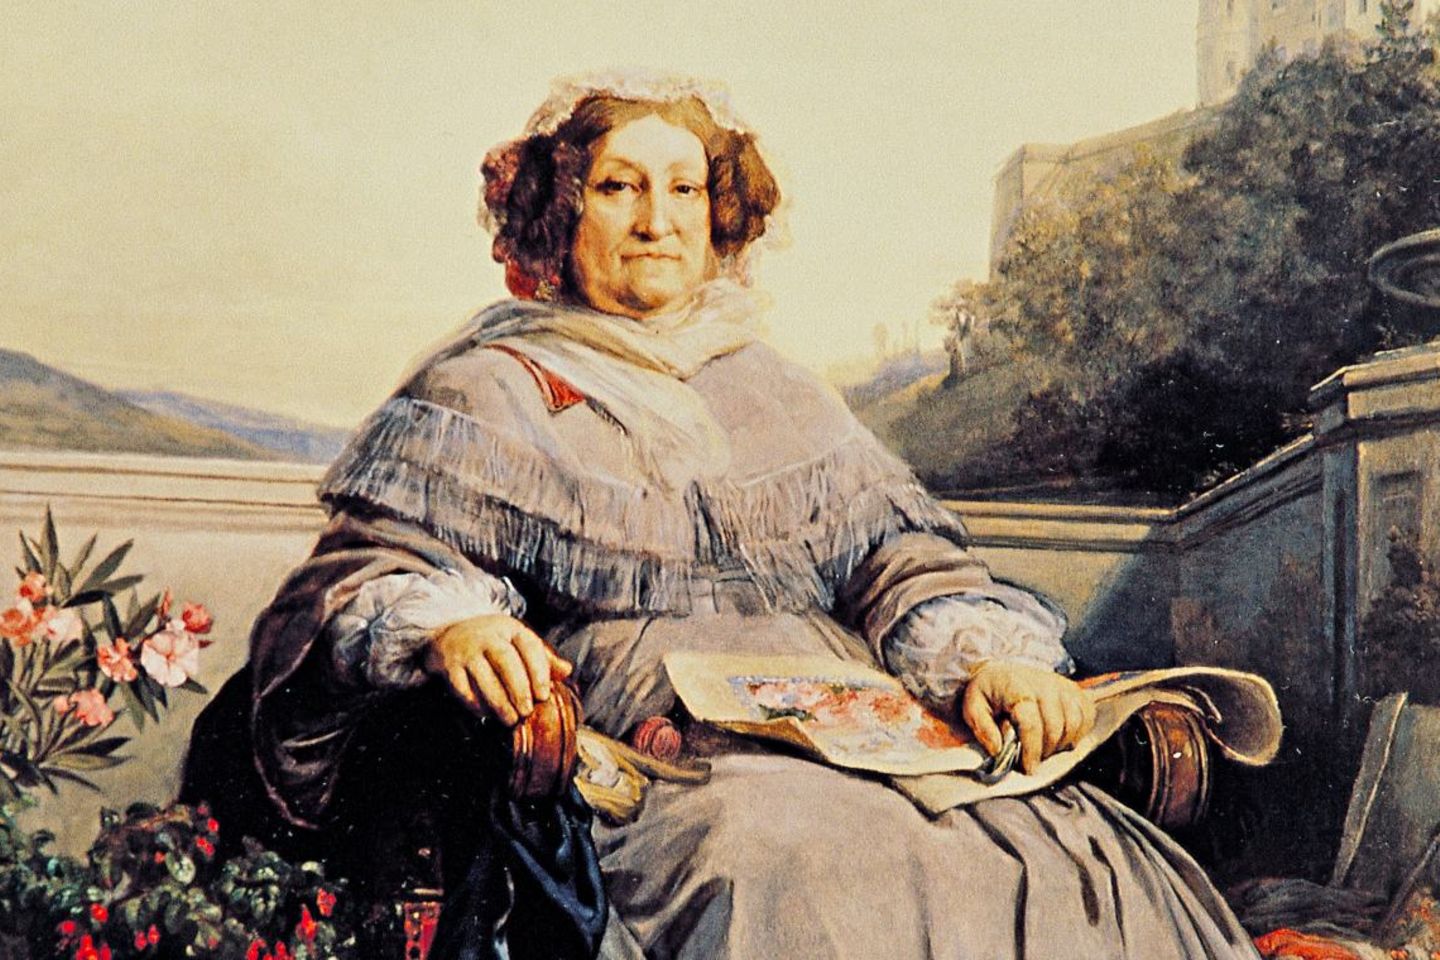 Das letzte Porträt von Barbe-Nicole Clicquot-Ponsardin malte Léon Cogniet in den 1860er-Jahren. Zu ihren Füßen ruht ihre ...